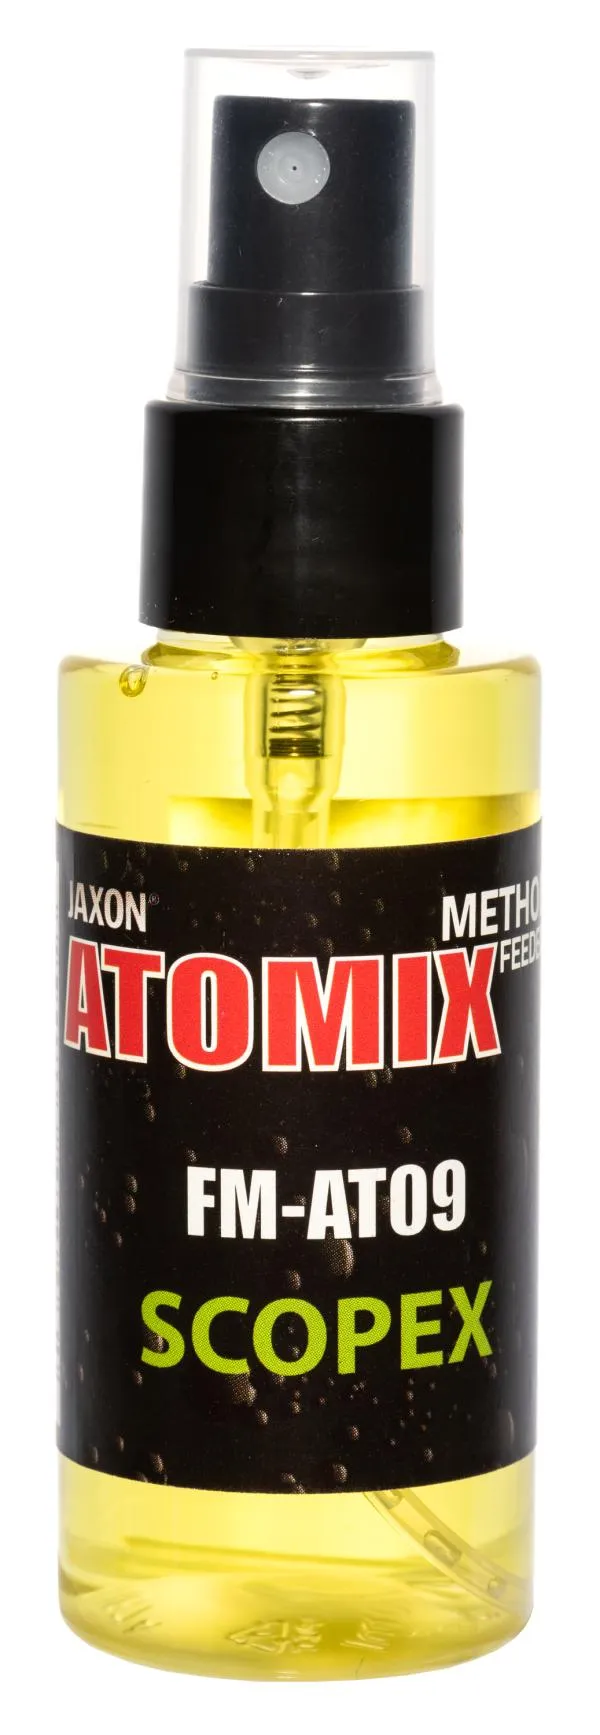 NextFish - Horgász webshop és horgászbolt - JAXON ATOMIX - SCOPEX 50g aroma